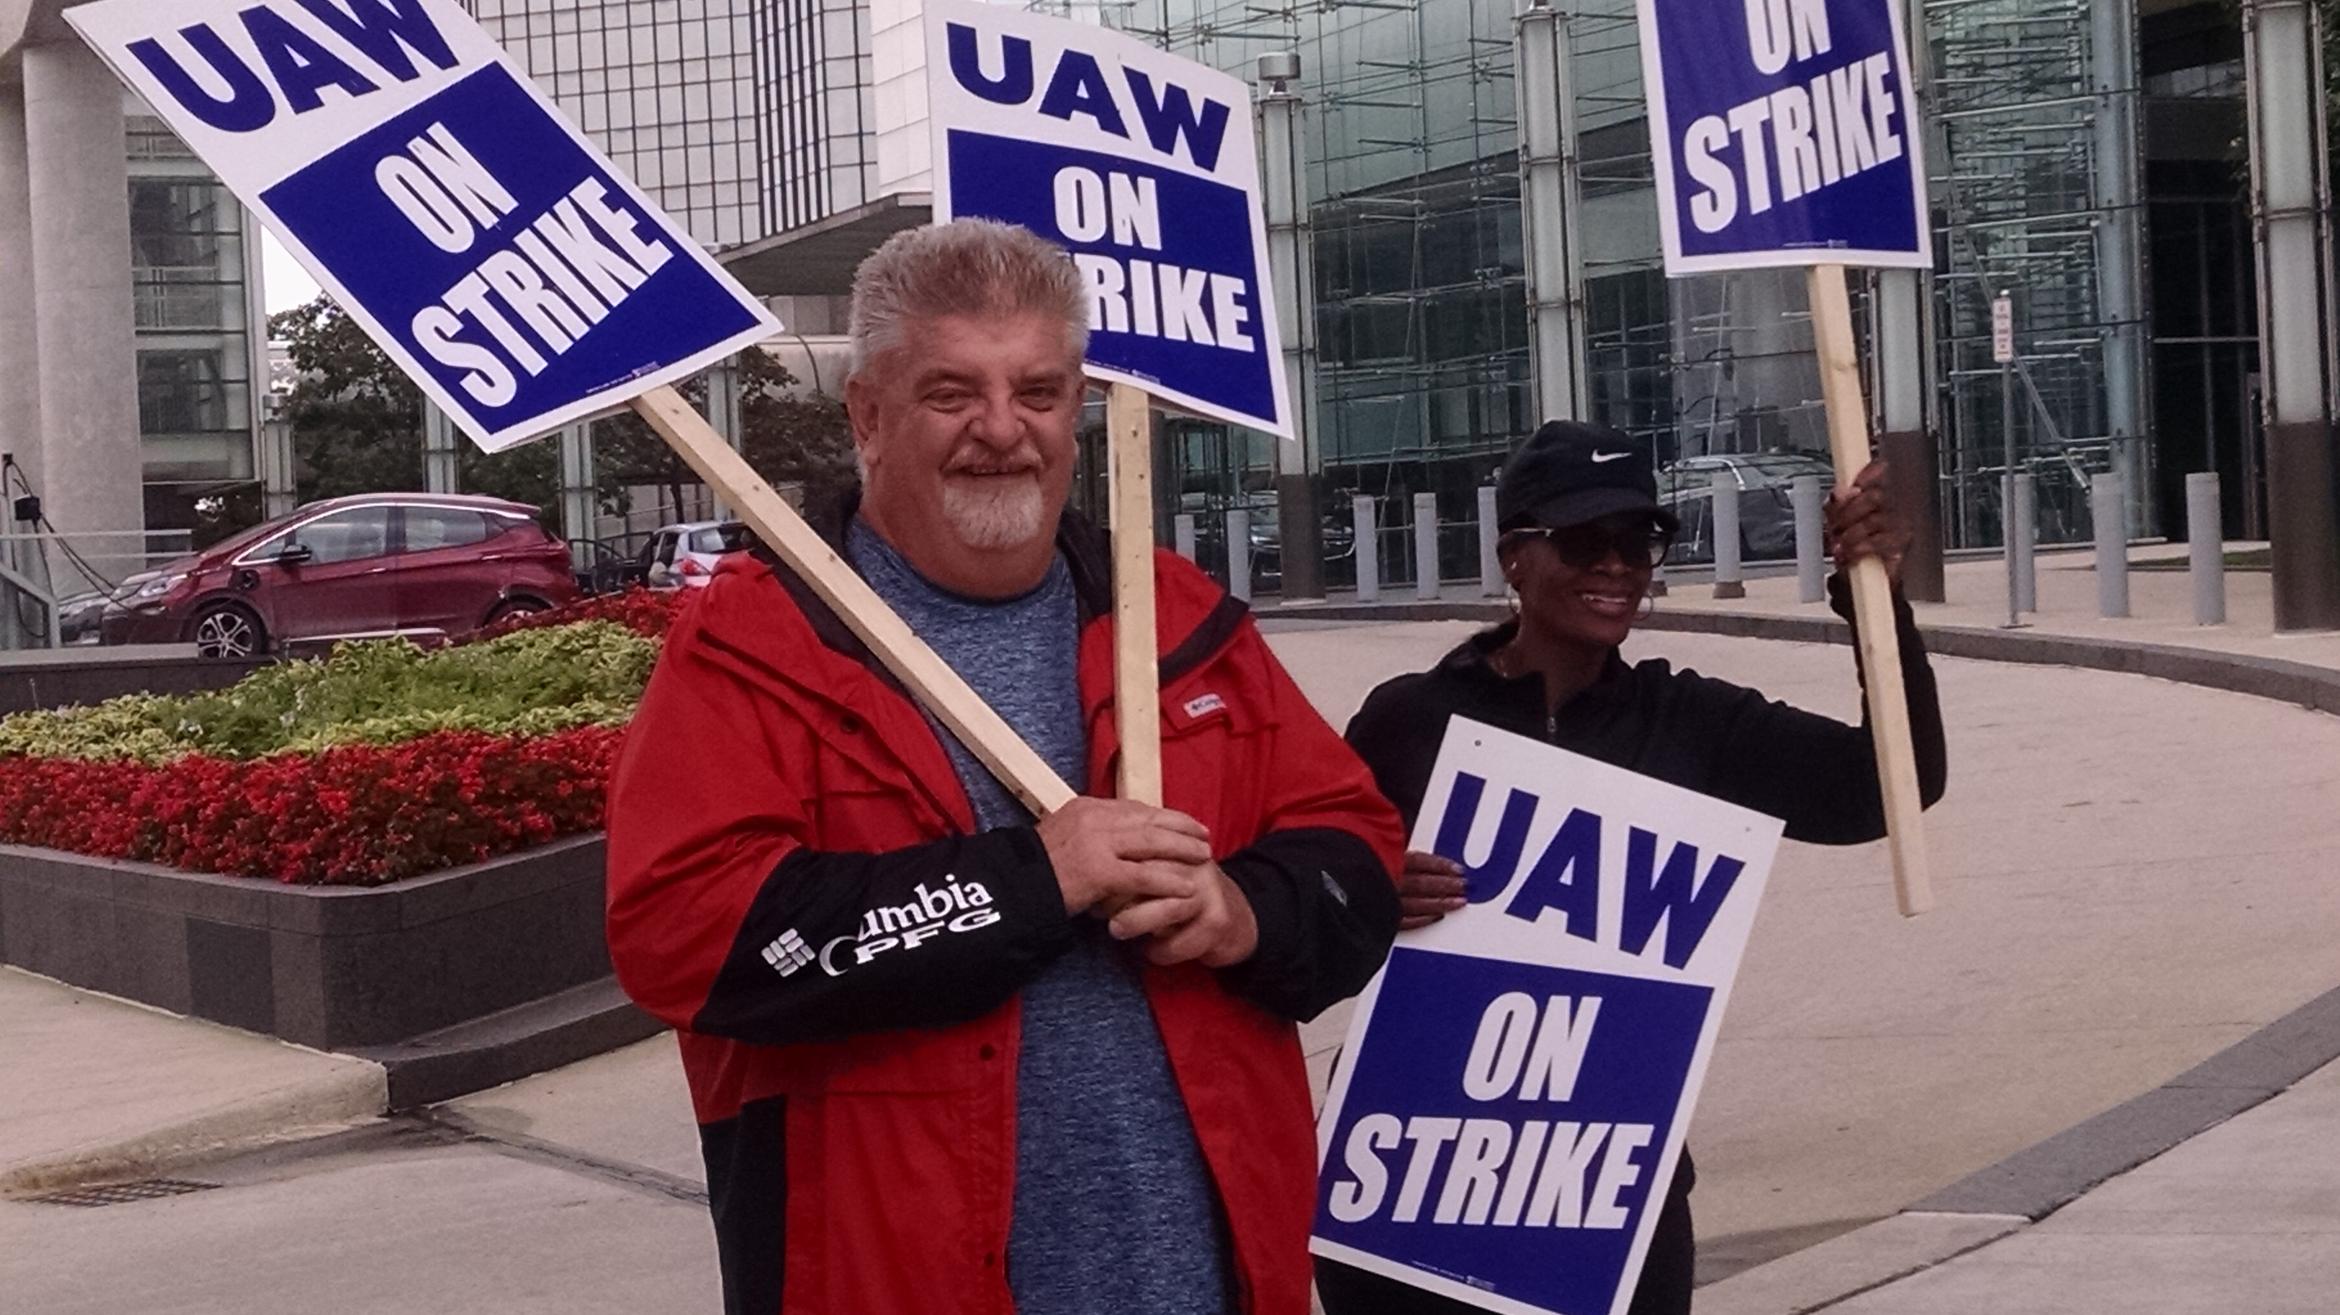 UAW Strike Against General Motors Has Big Impact on Metro Detroit WDET